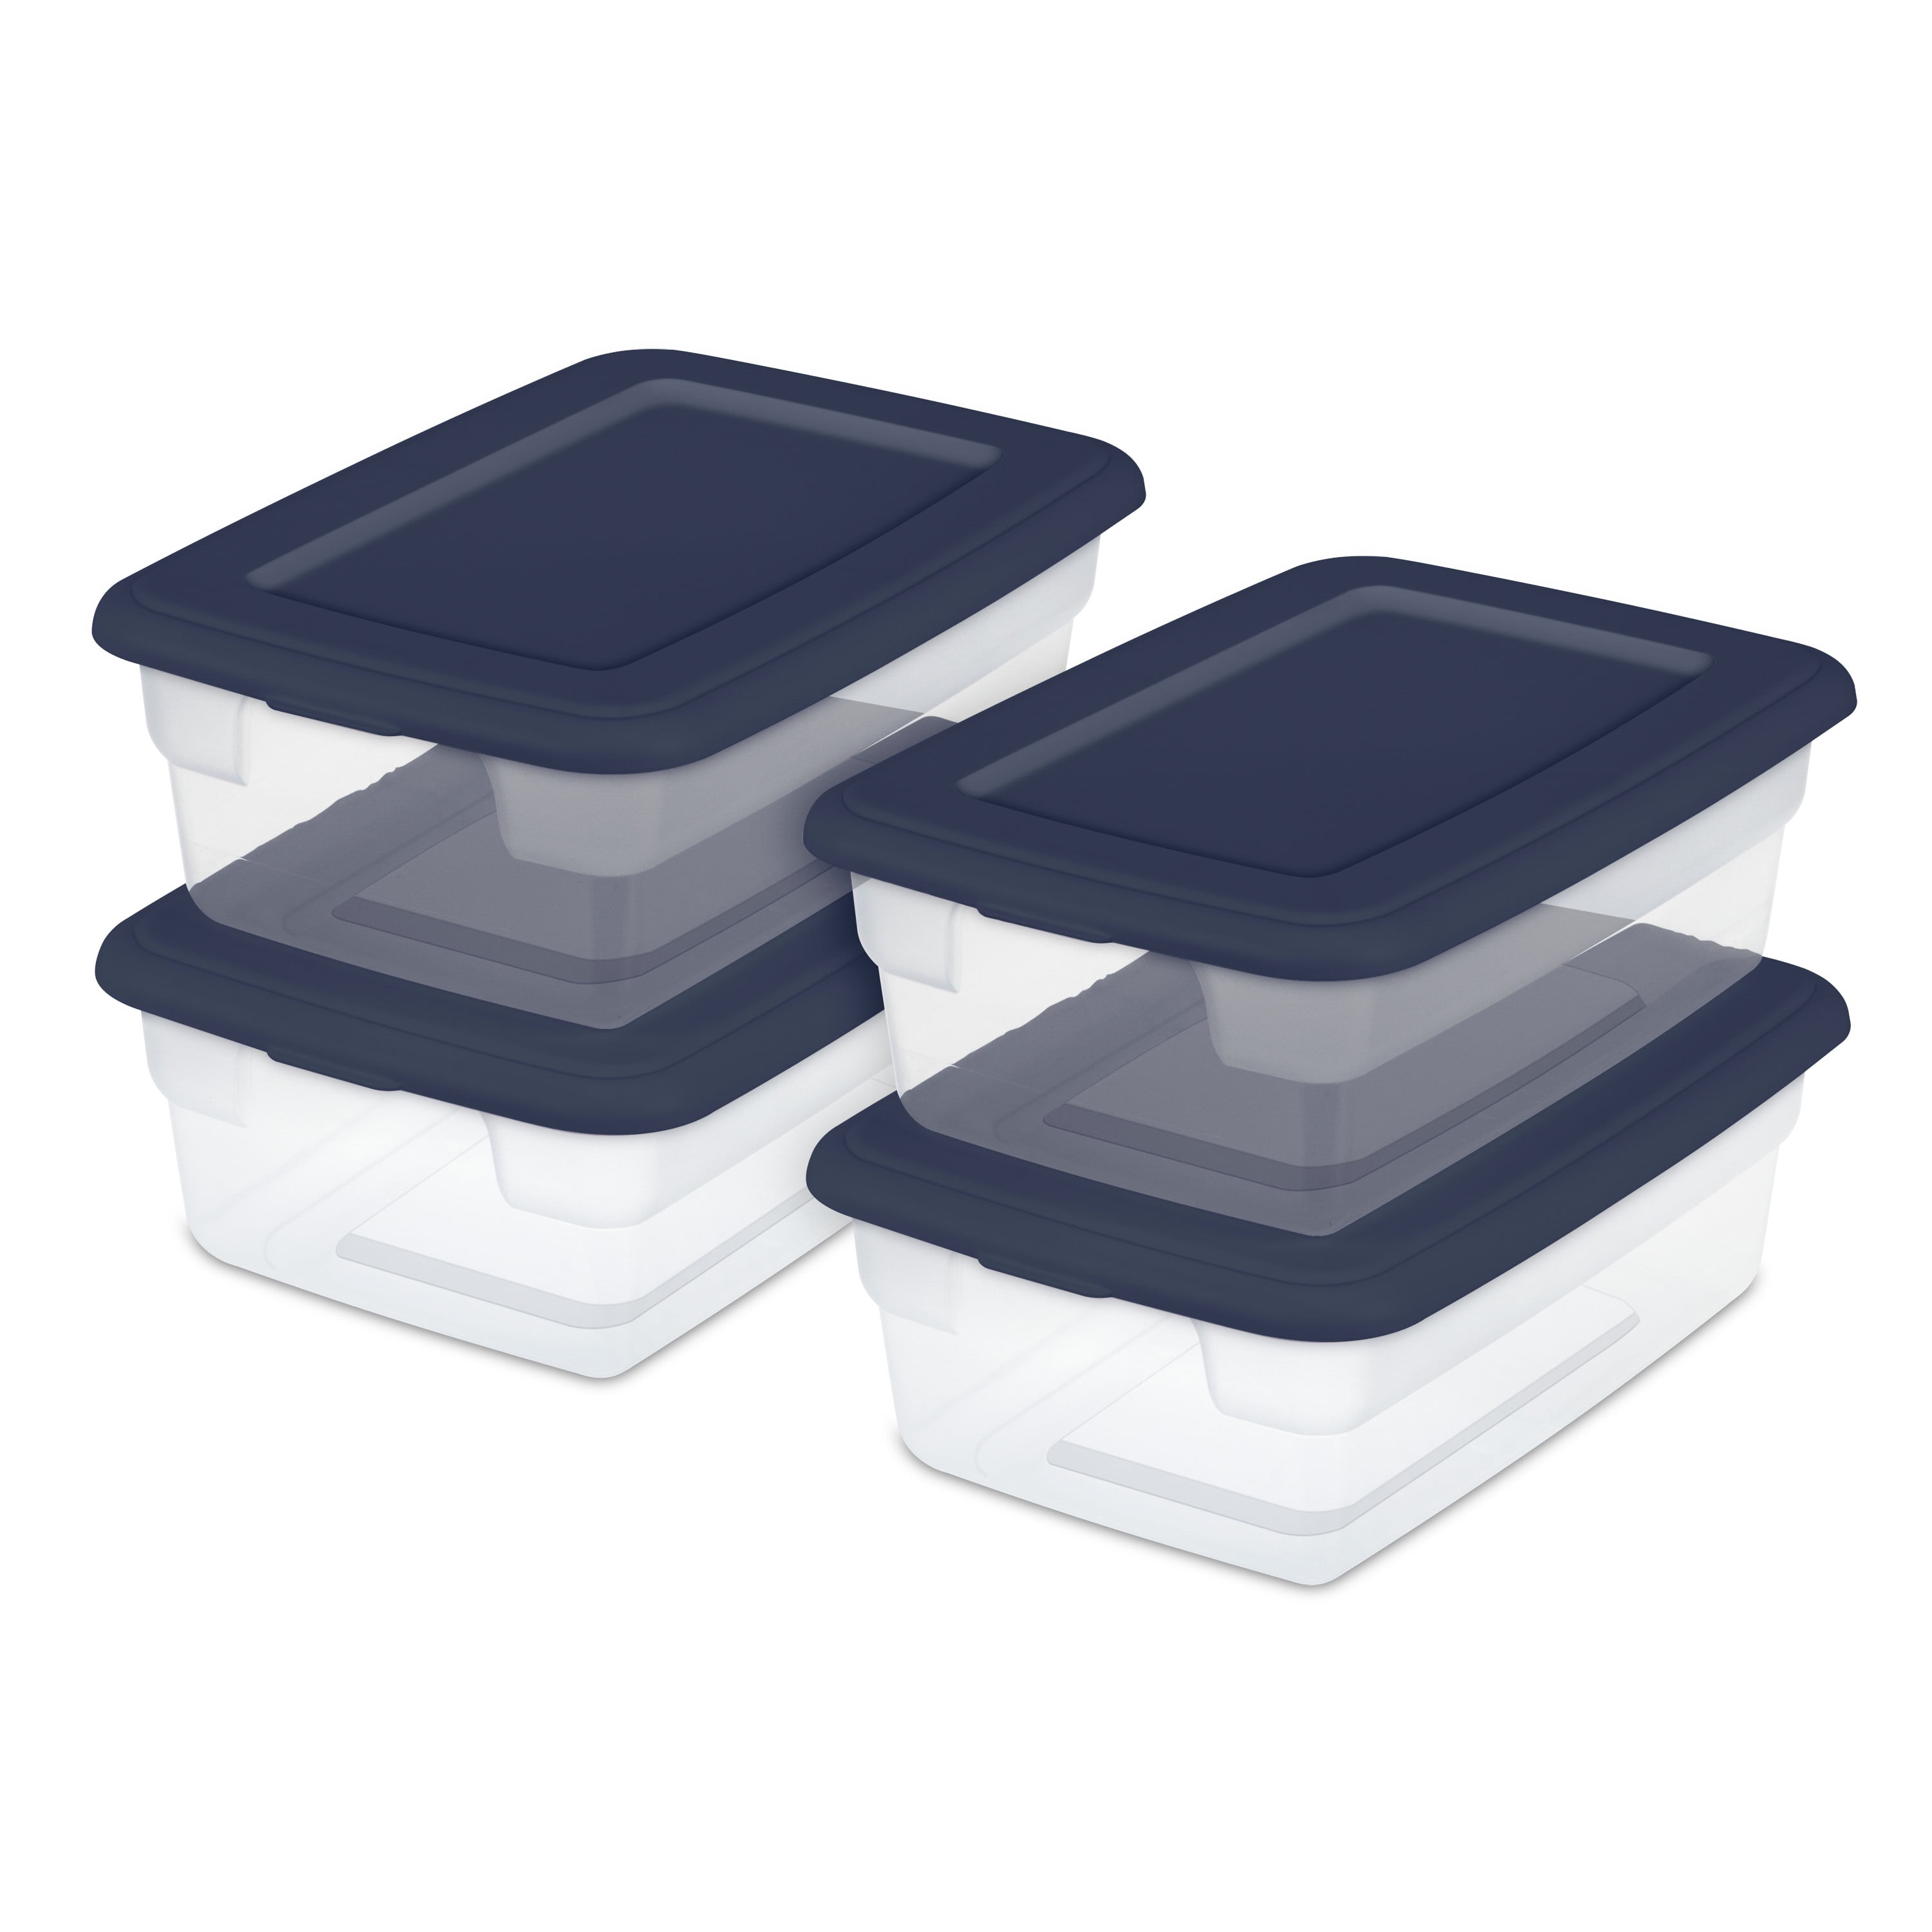 Case of 4 Sterilite 116 Quart Ultra Latch Boxes - 116 Quart - Clear